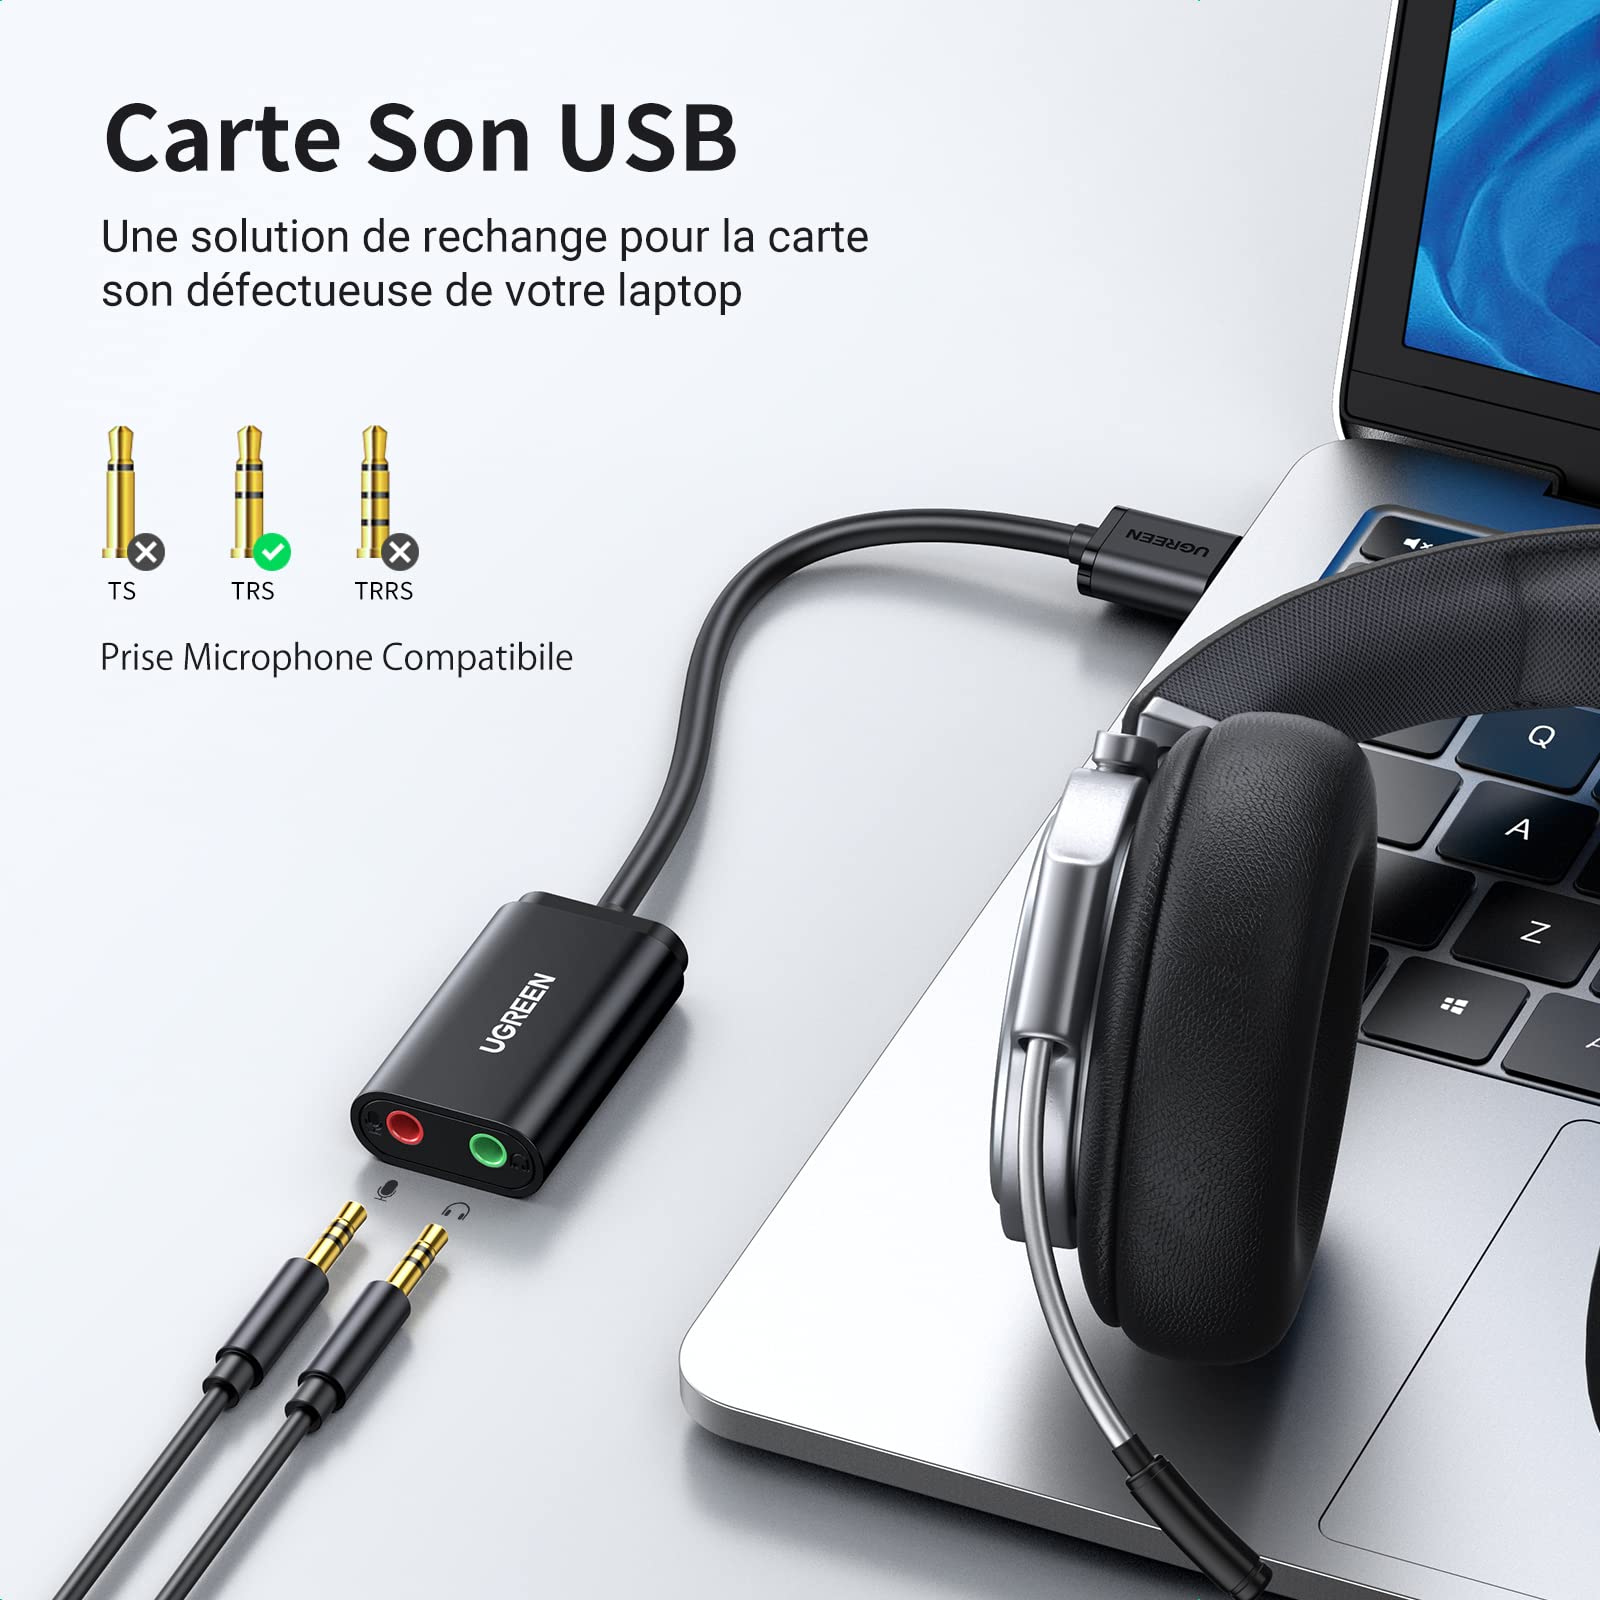 Adaptateur USB vers Jack 3,5mm Carte Son Externe USB pour Casque Audio  Micro TRRS Enceinte